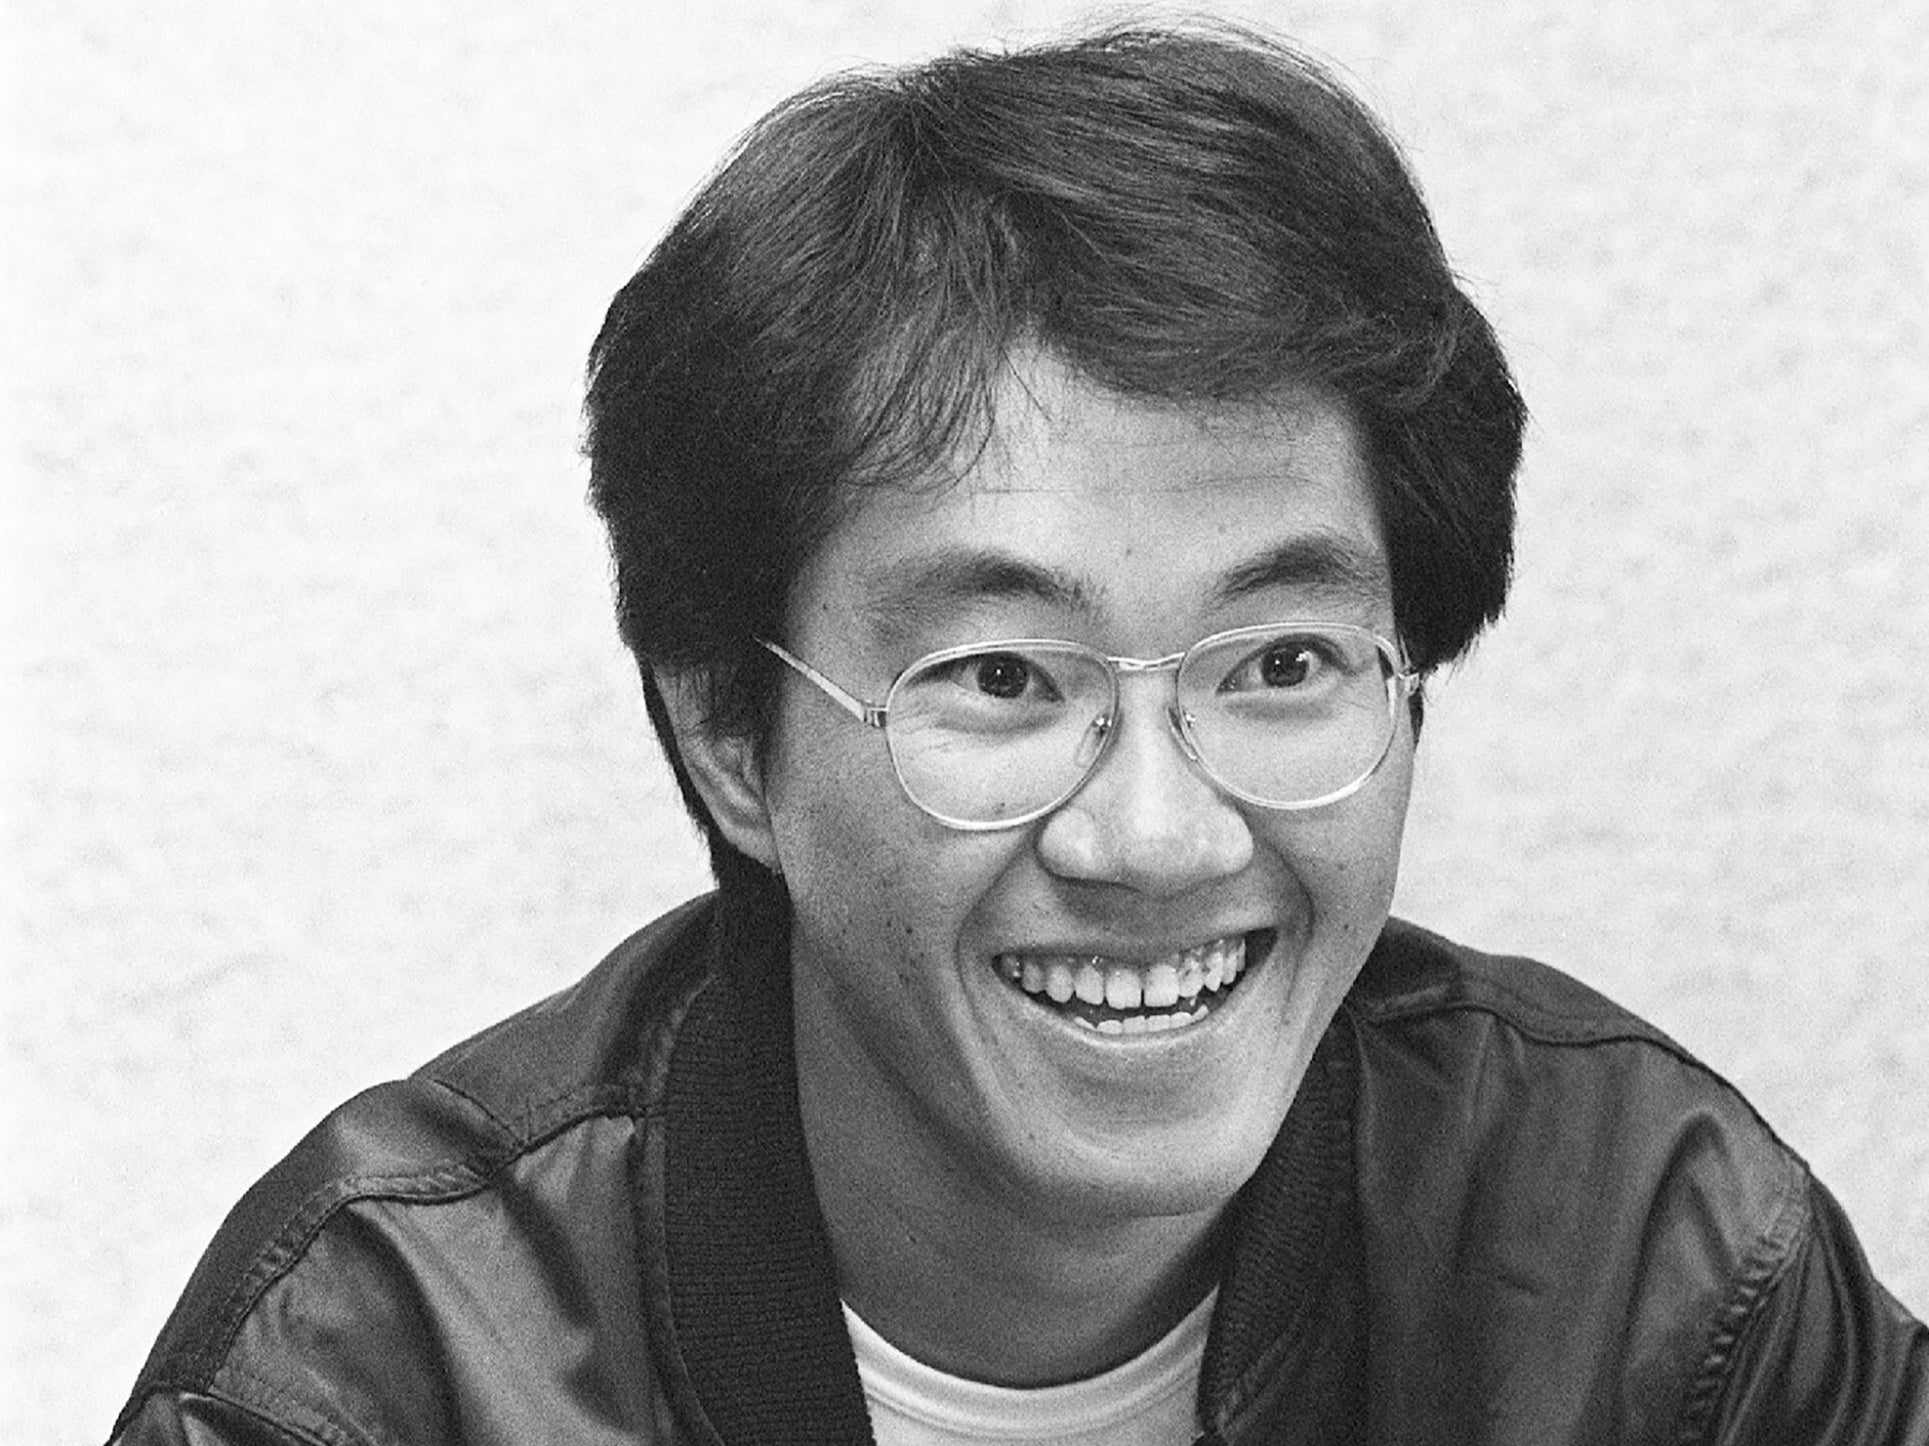 A picture of Akira Toriyama taken in May 1982